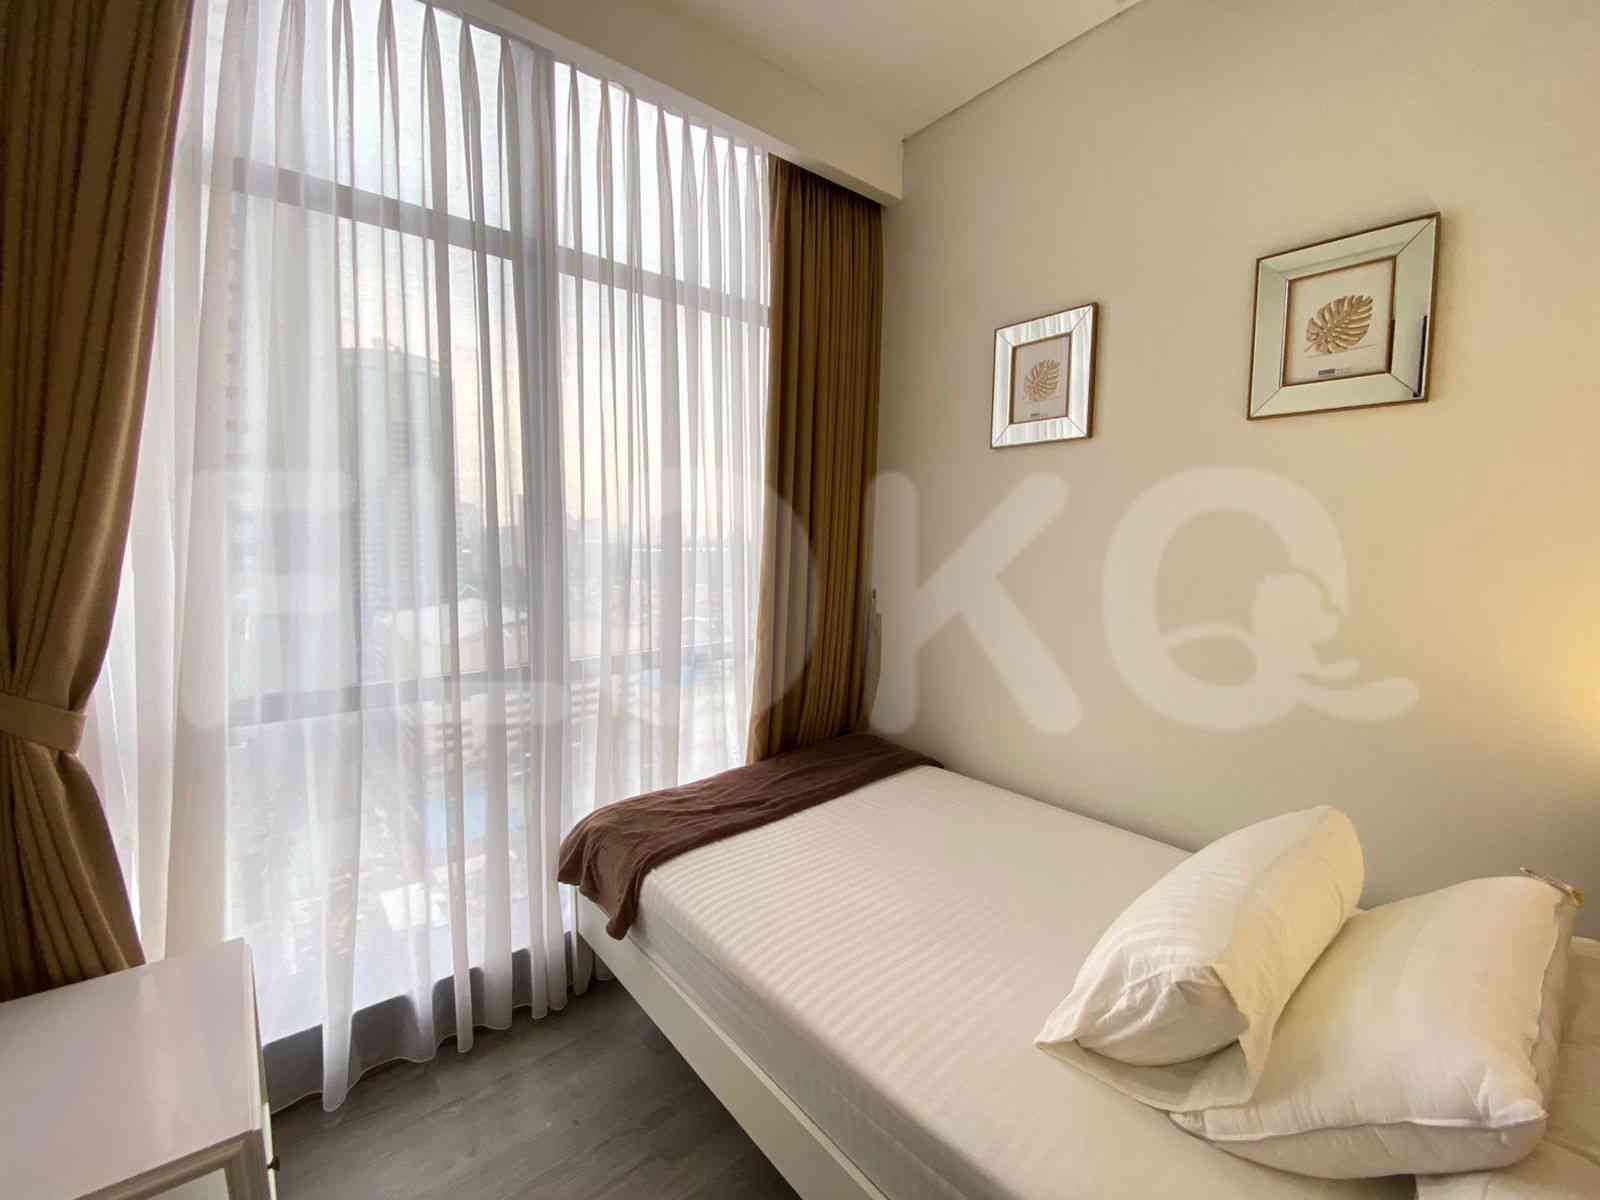 2 Bedroom on 14th Floor for Rent in Sudirman Suites Jakarta - fsu321 4